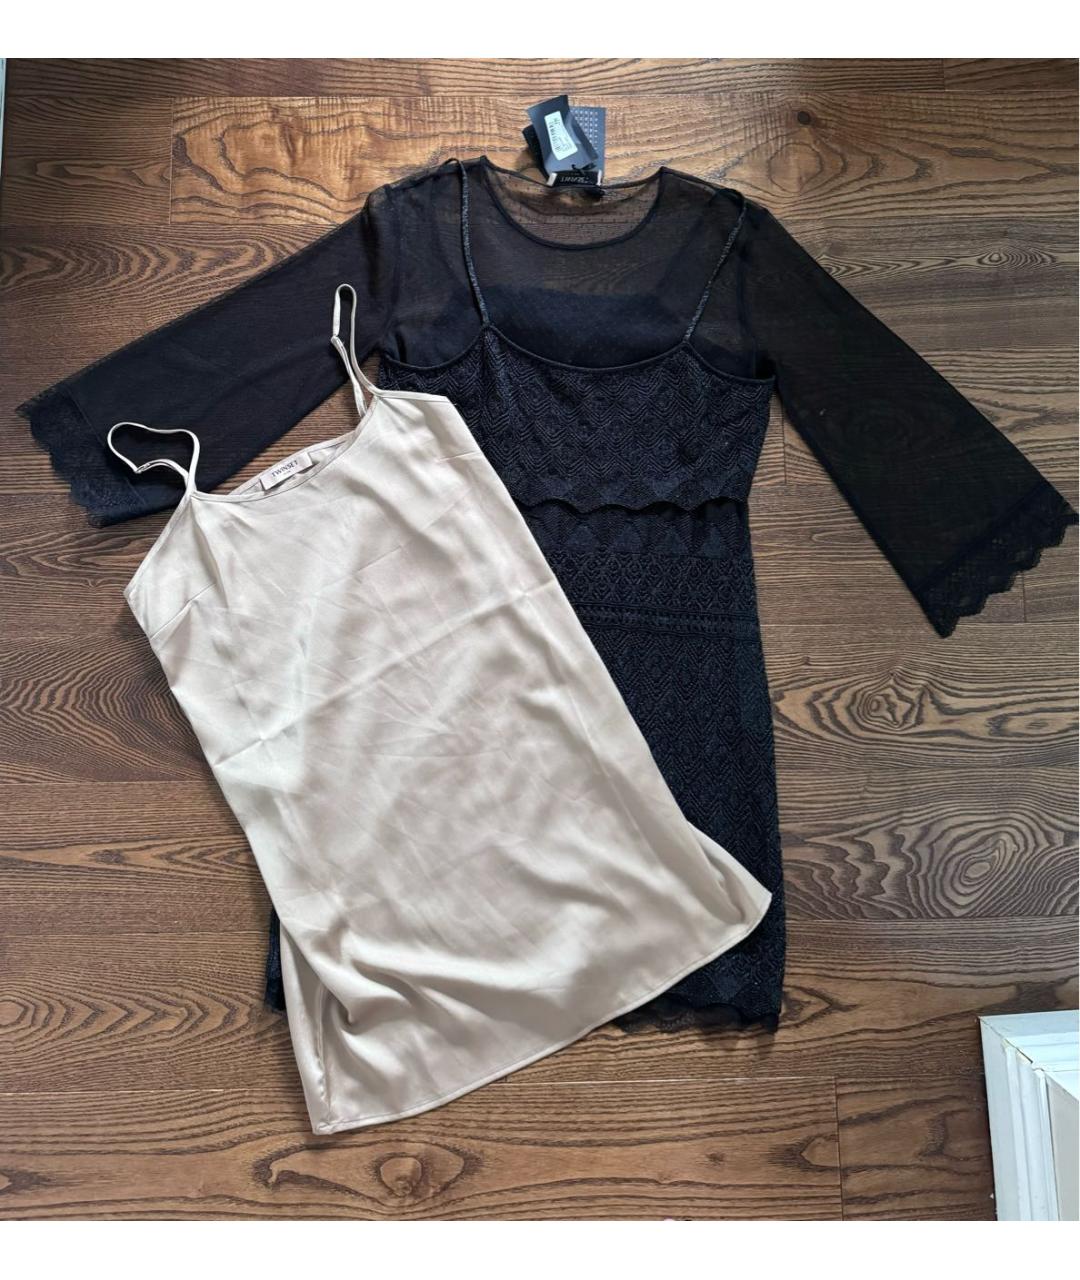 TWIN-SET Черное кружевное коктейльное платье, фото 2